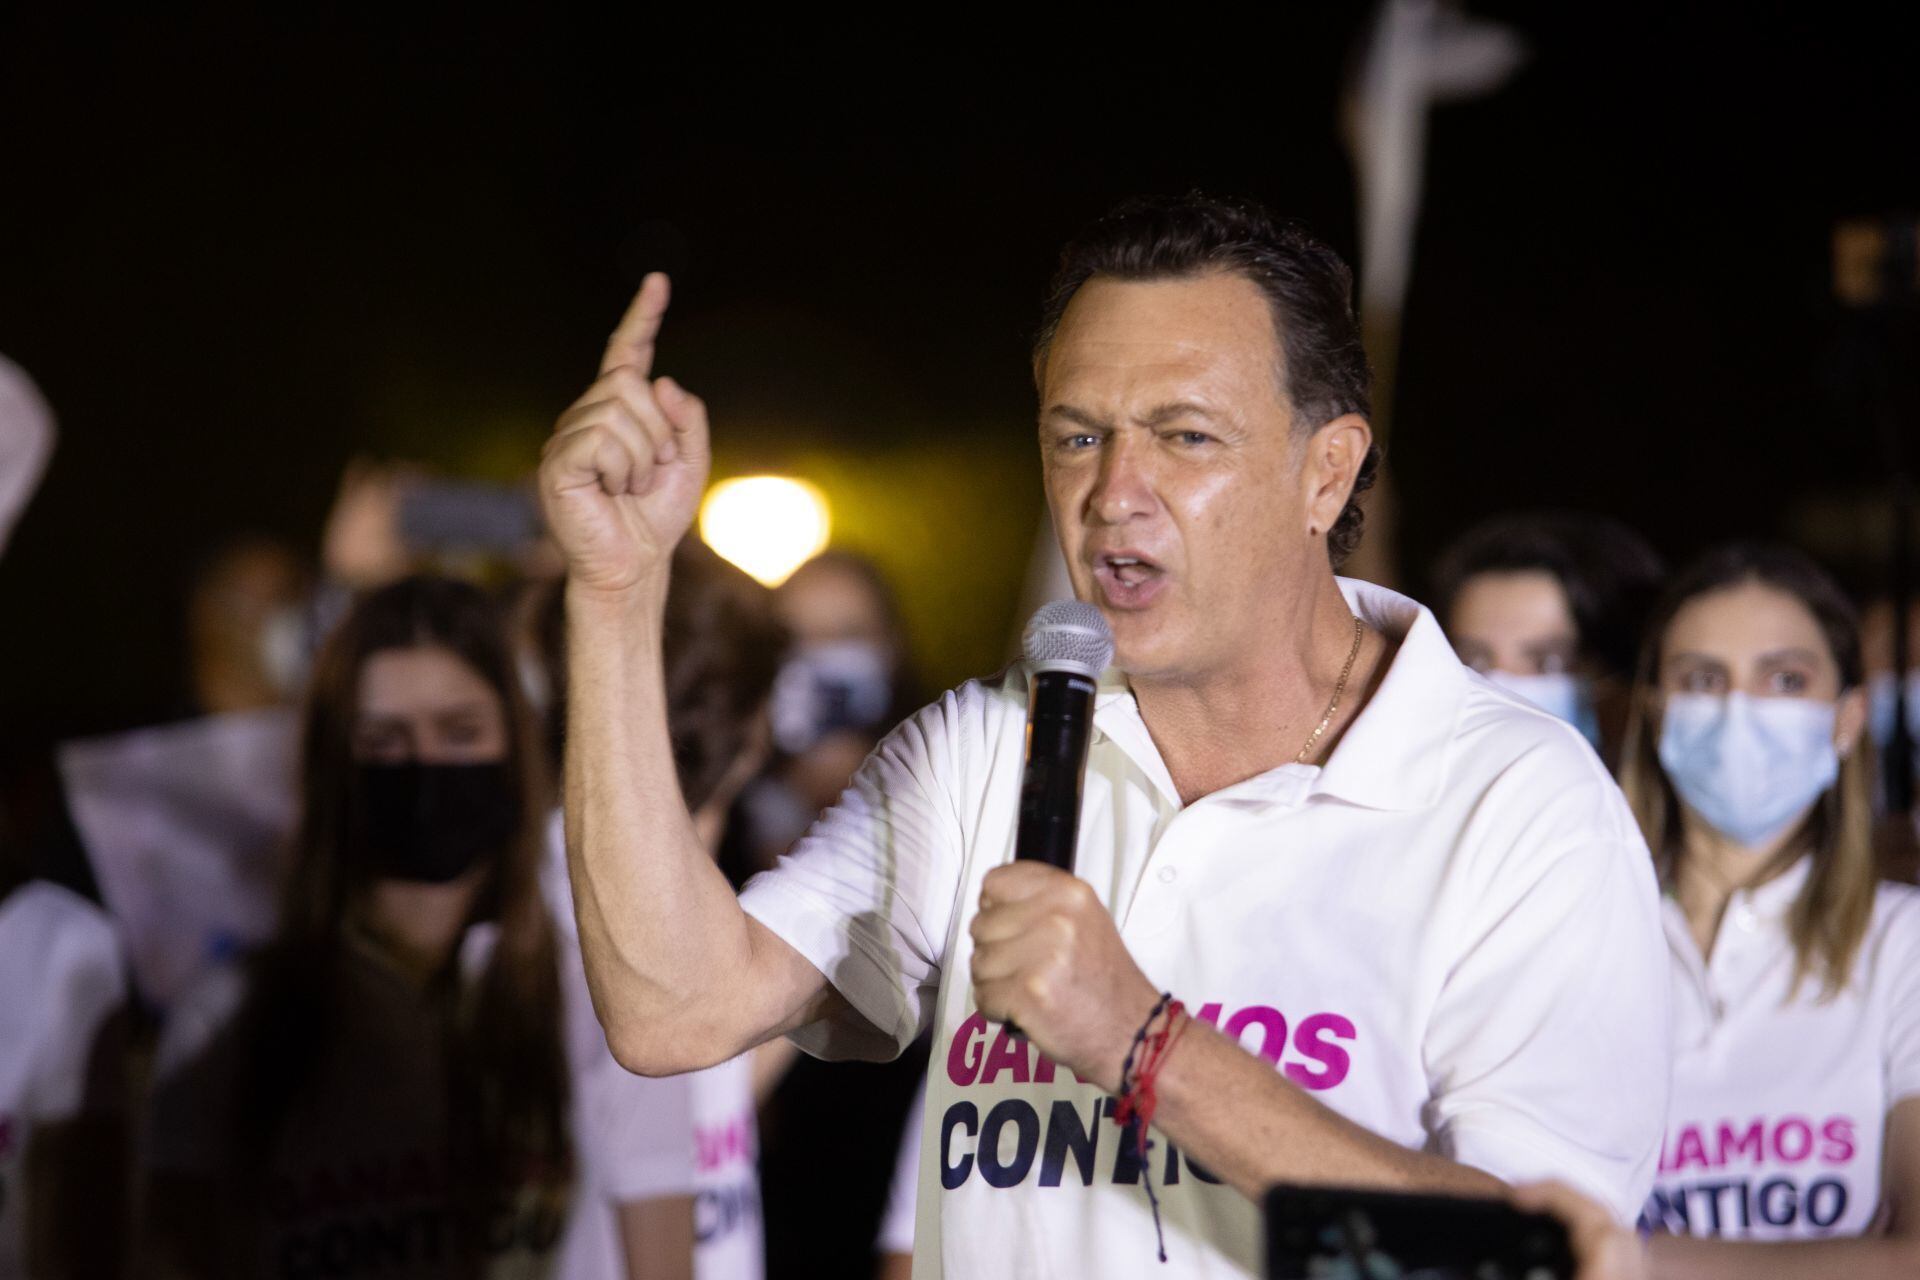 Cierre del PREP Querétaro: Mauricio Kuri gana contienda con 54.2% de votos